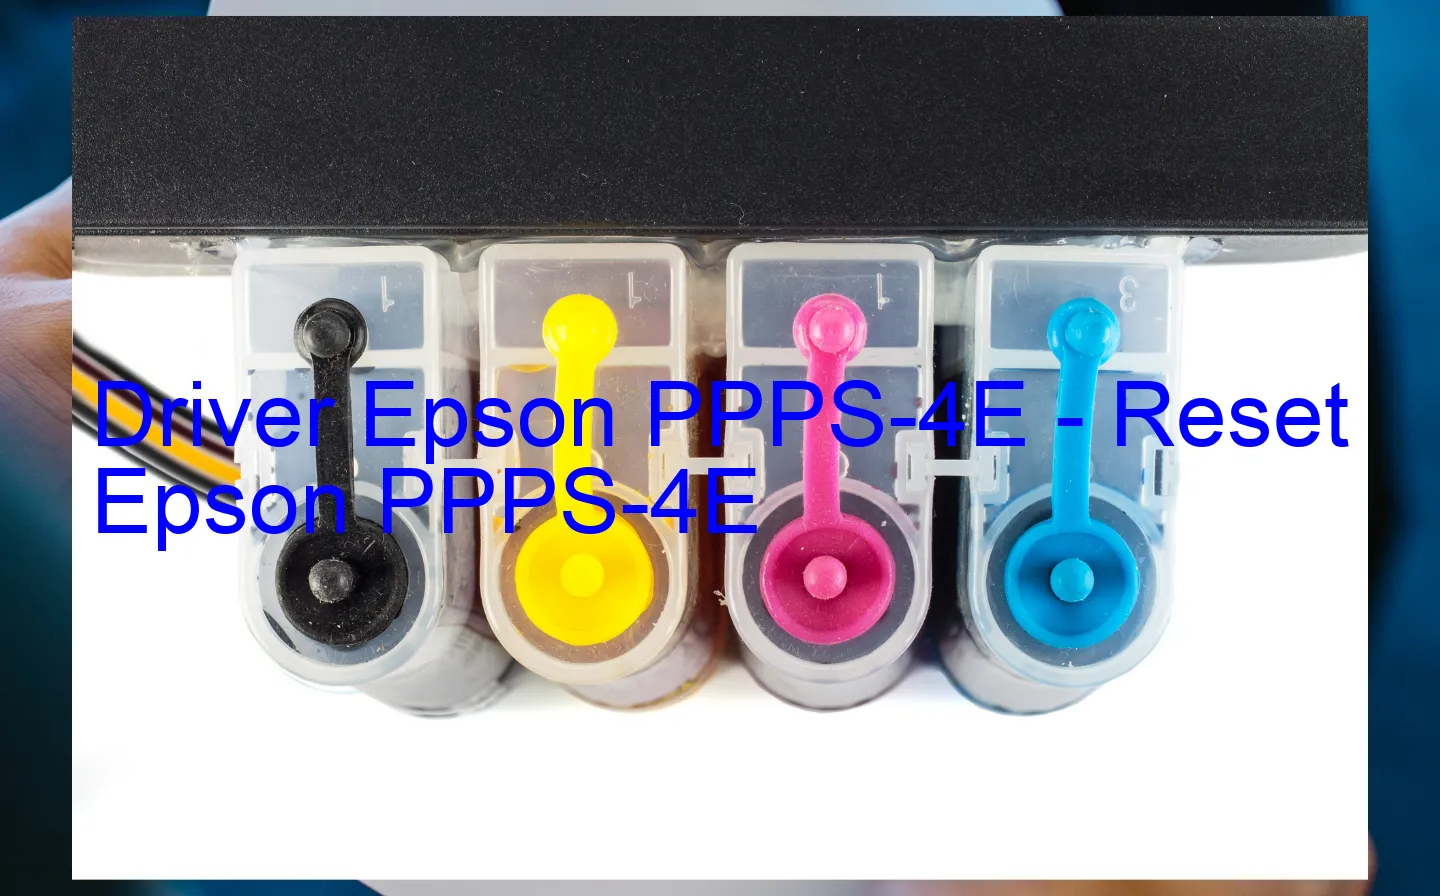 Epson PPPS-4Eのドライバー、Epson PPPS-4Eのリセットソフトウェア